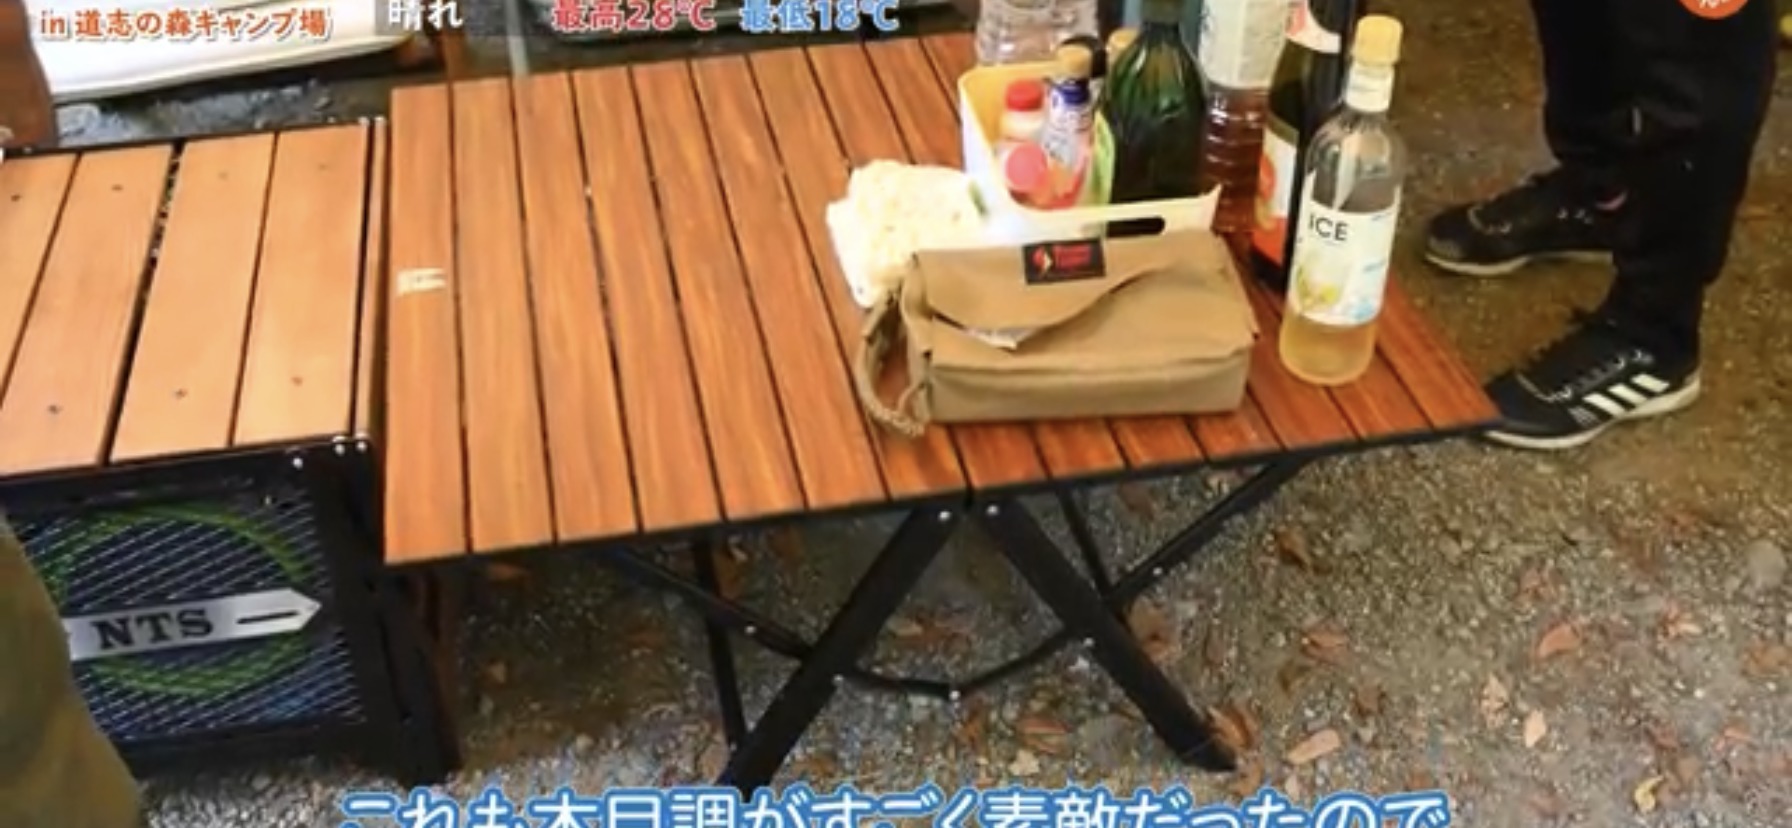 テーブル：【ogawa(オガワ) 】折りたたみ式 3ハイ&ロー テーブル